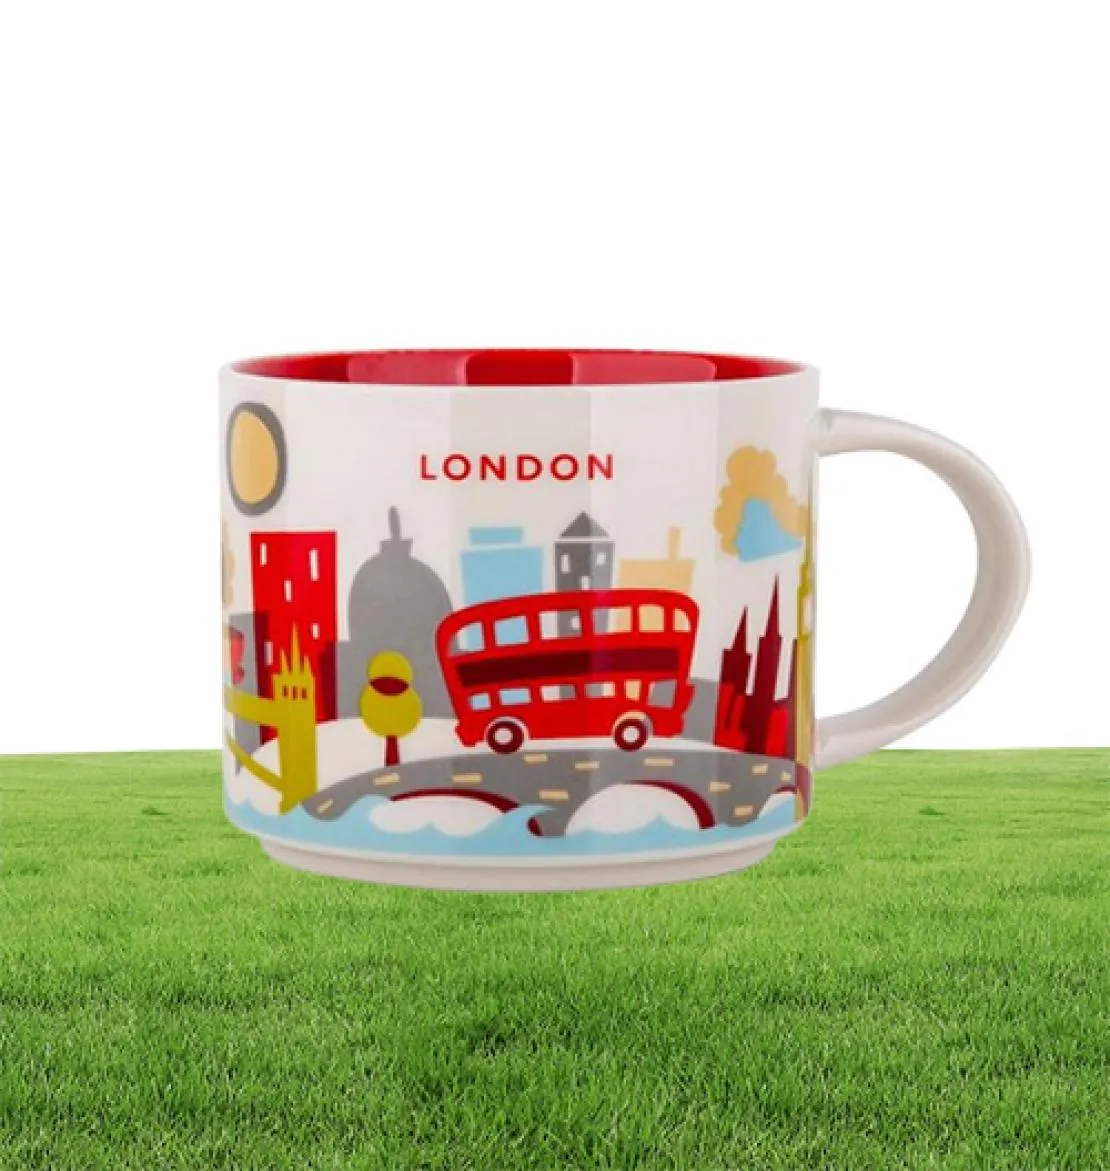 14oz 용량 세라믹 시티 머그 영국 도시 최고의 커피 머그 컵 오리지널 박스 런던 시티 6150731